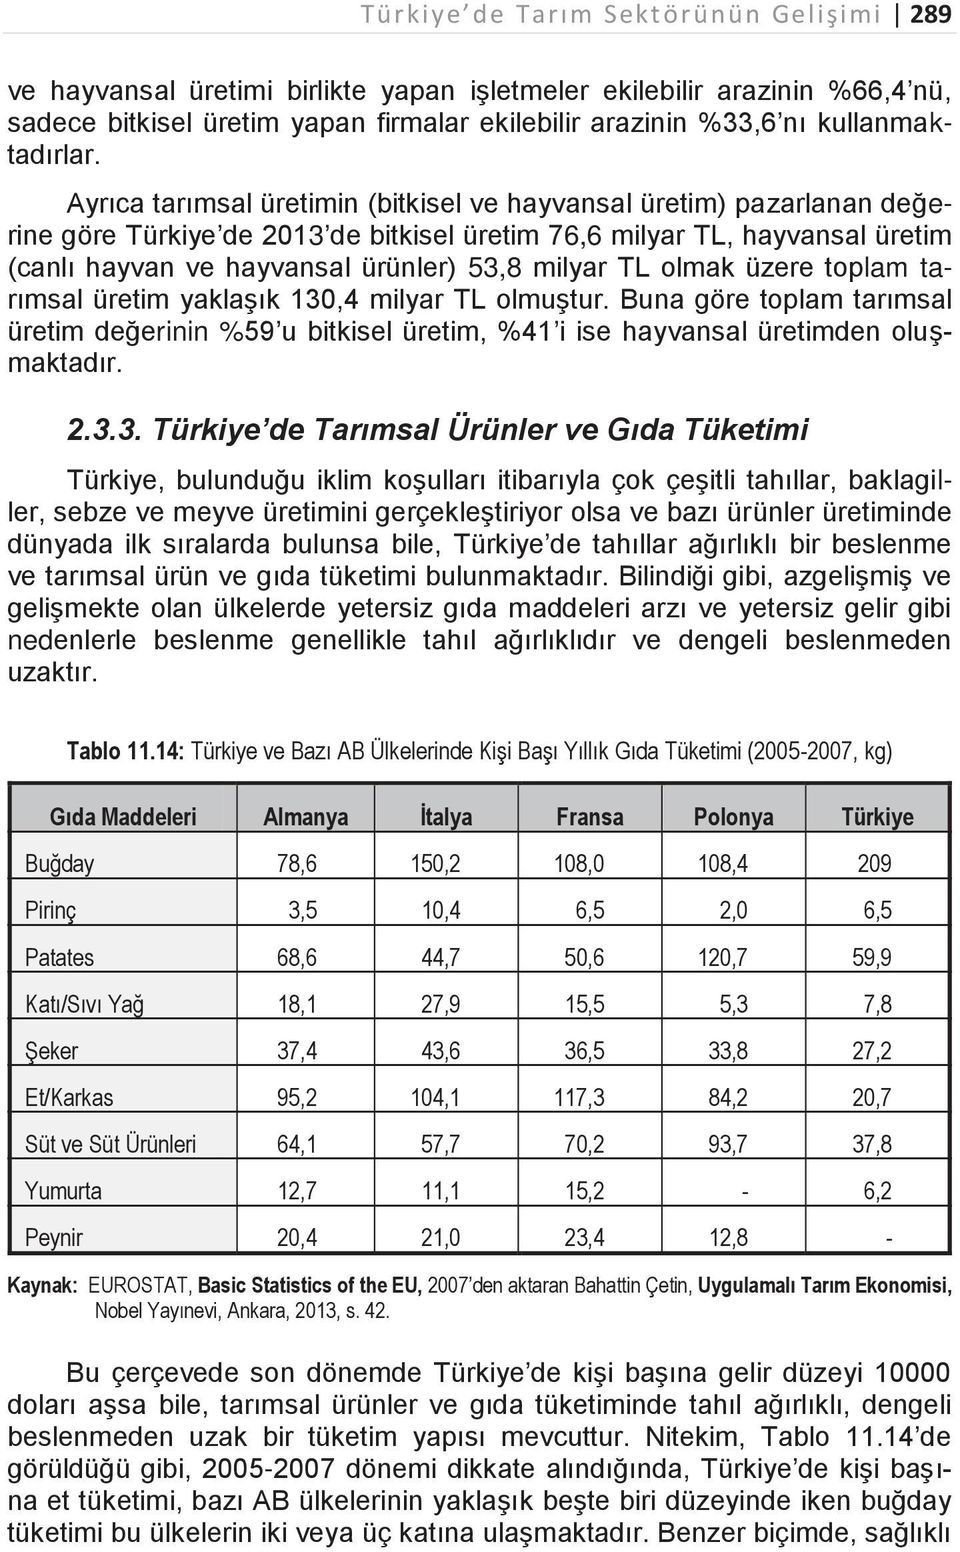 Ayrıca tarımsal üretimin (bitkisel ve hayvansal üretim) pazarlanan değerine göre Türkiye de 2013 de bitkisel üretim 76,6 milyar TL, hayvansal üretim (canlı hayvan ve hayvansal ürünler) 53,8 milyar TL